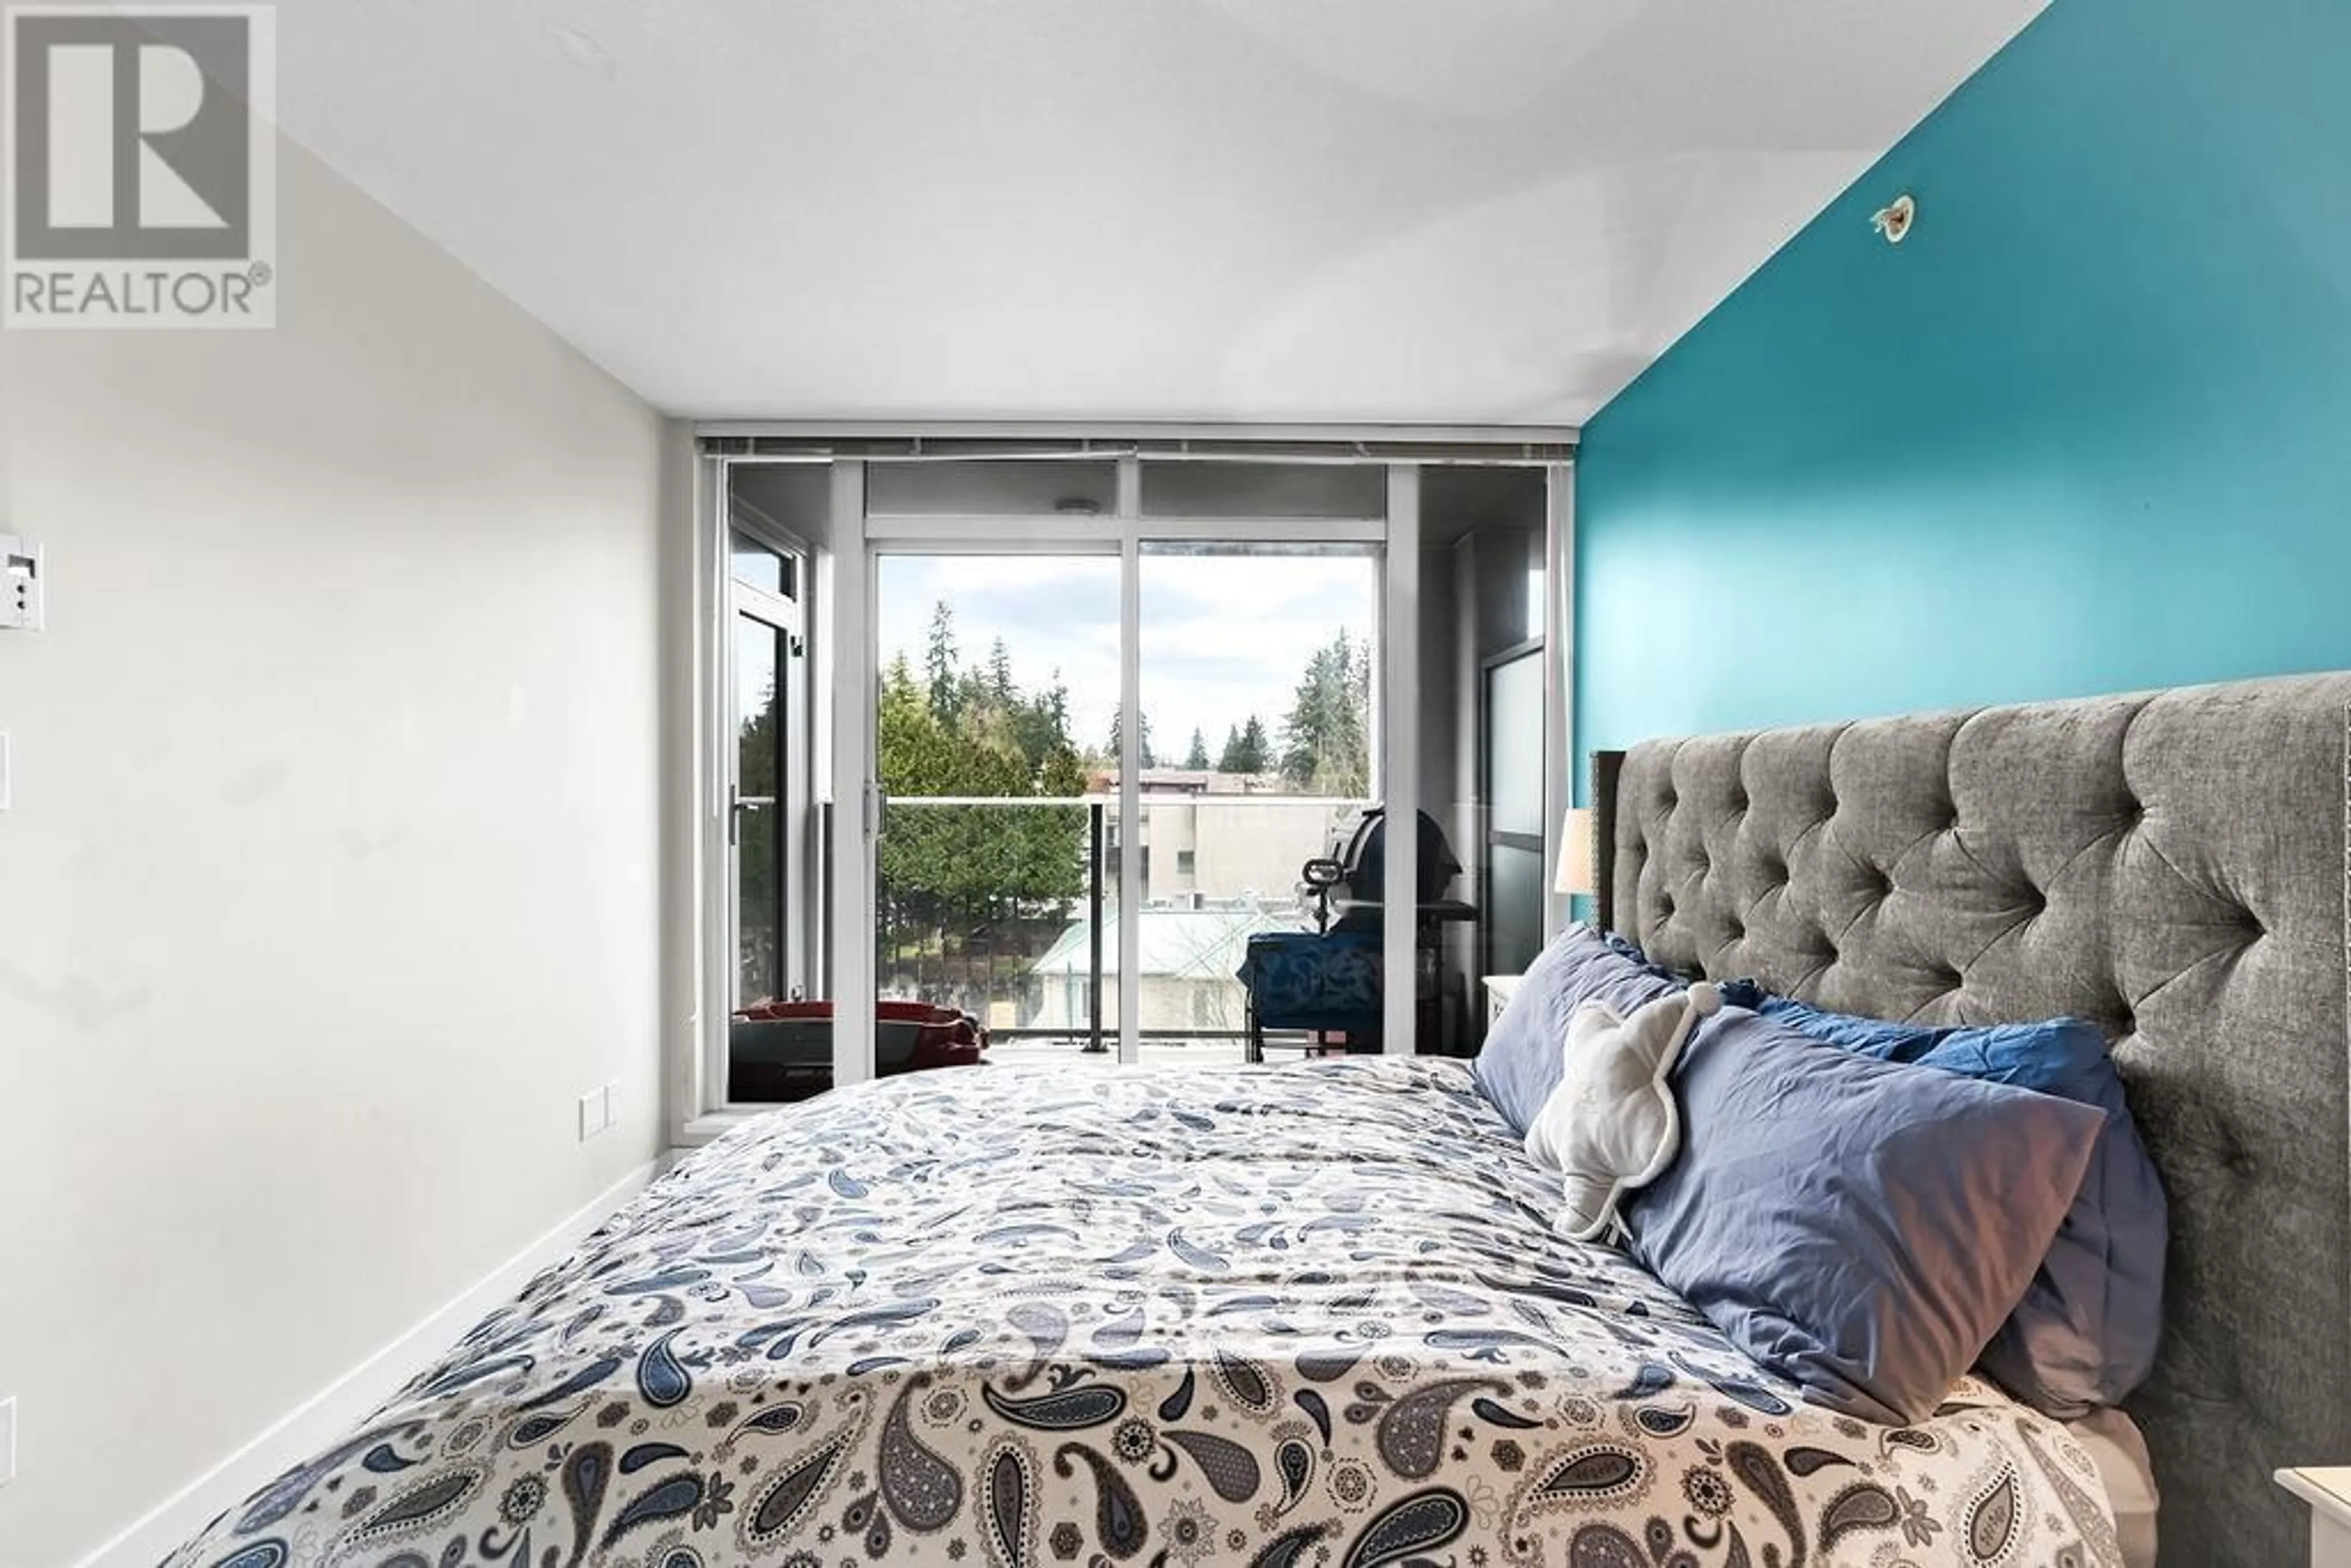 Bedroom for 605 958 RIDGEWAY AVENUE, Coquitlam British Columbia V3K0C5